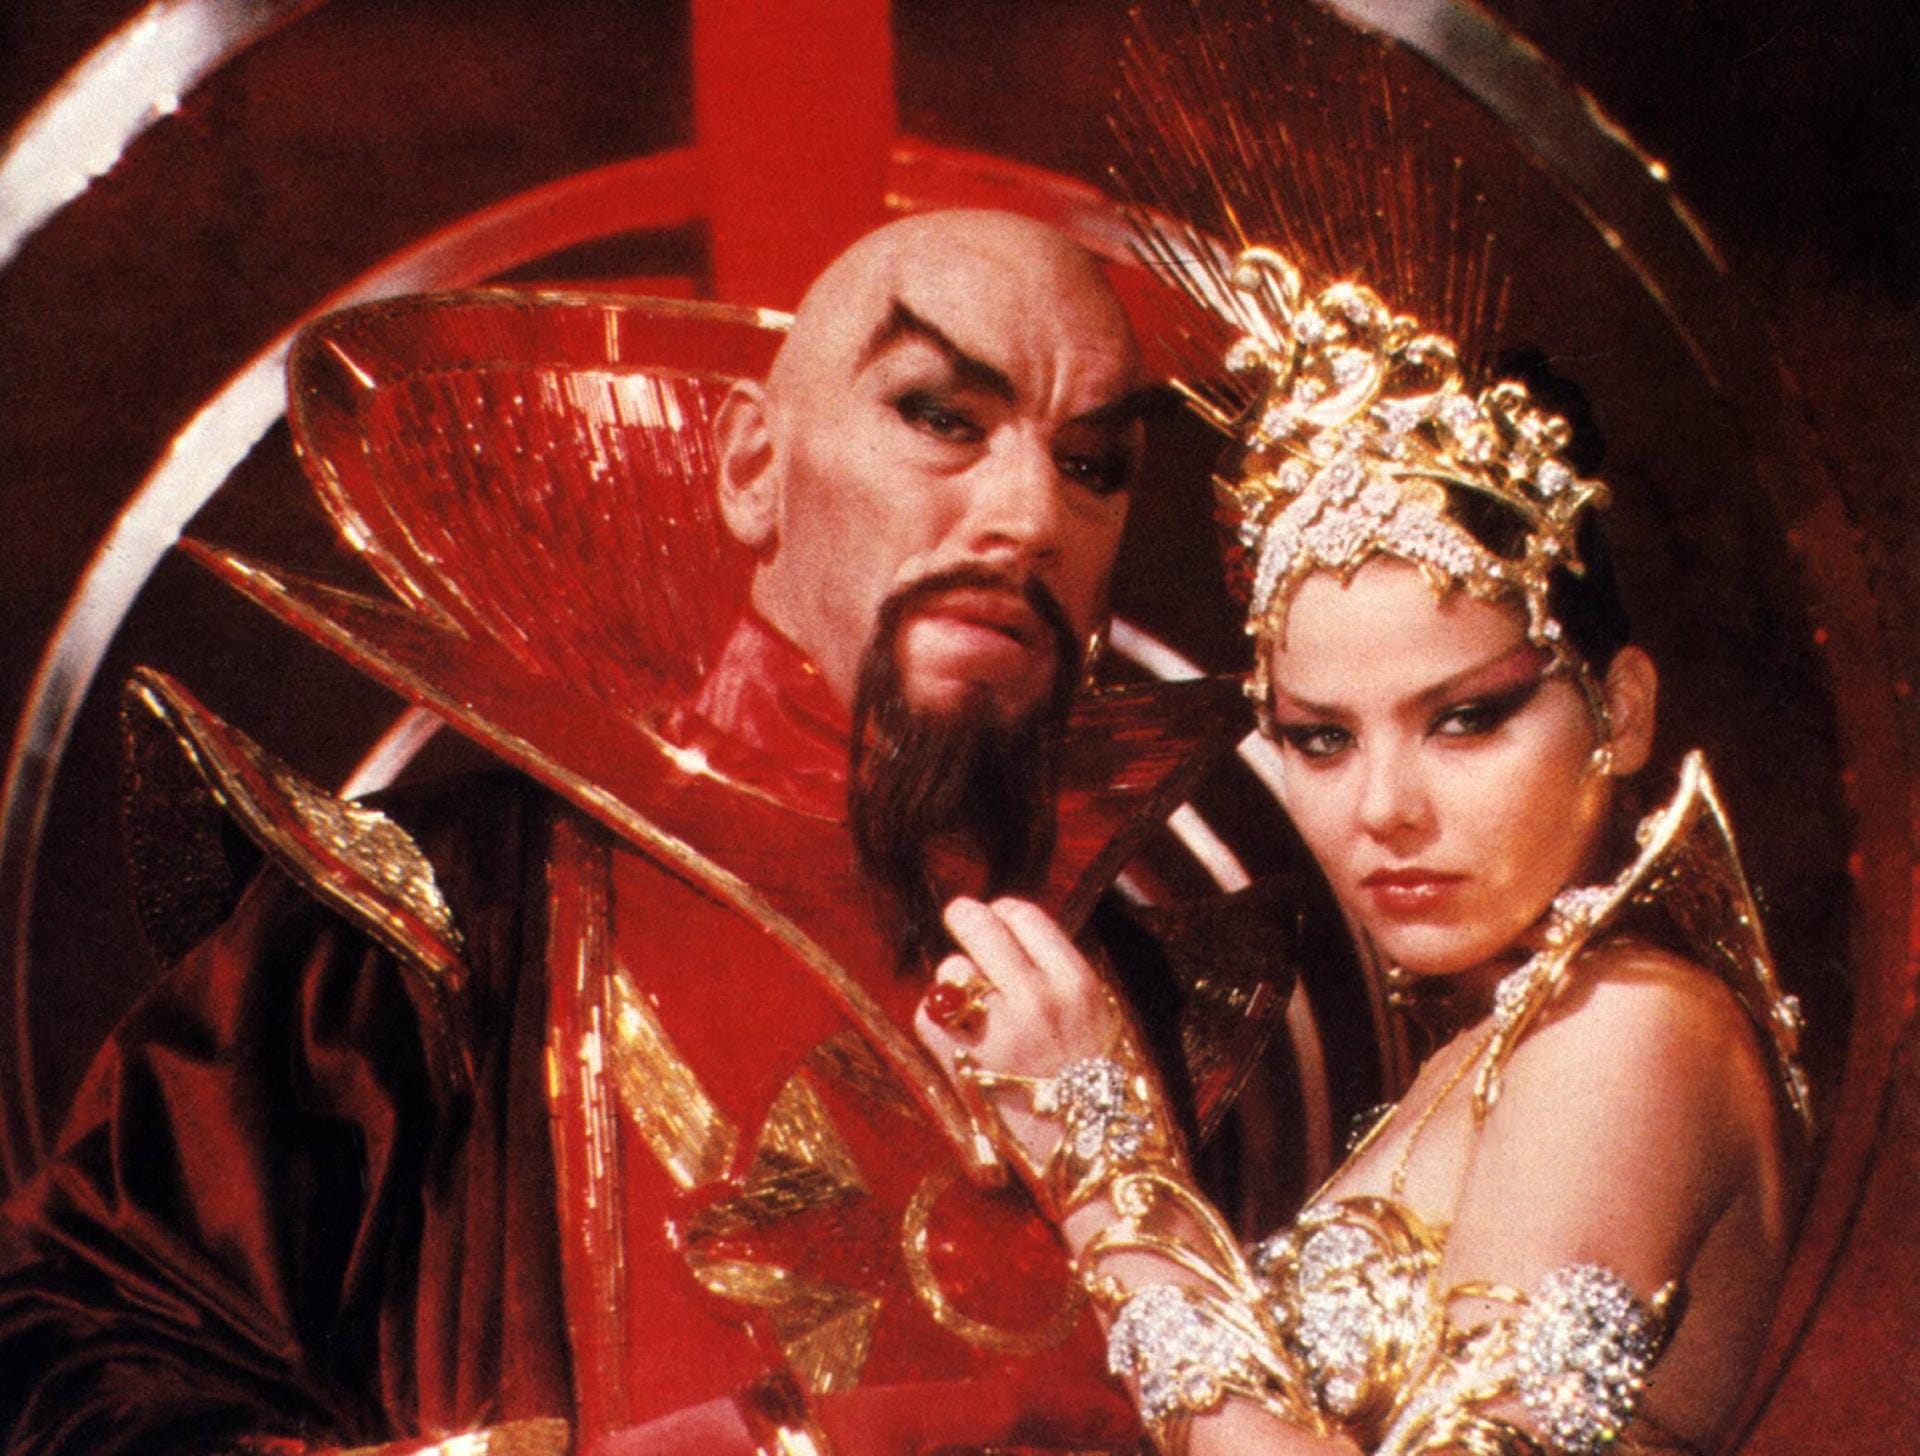 In "Flash Gordon" spielte Max von Sydow den Imperator Ming, einen intergalaktischen Führer,